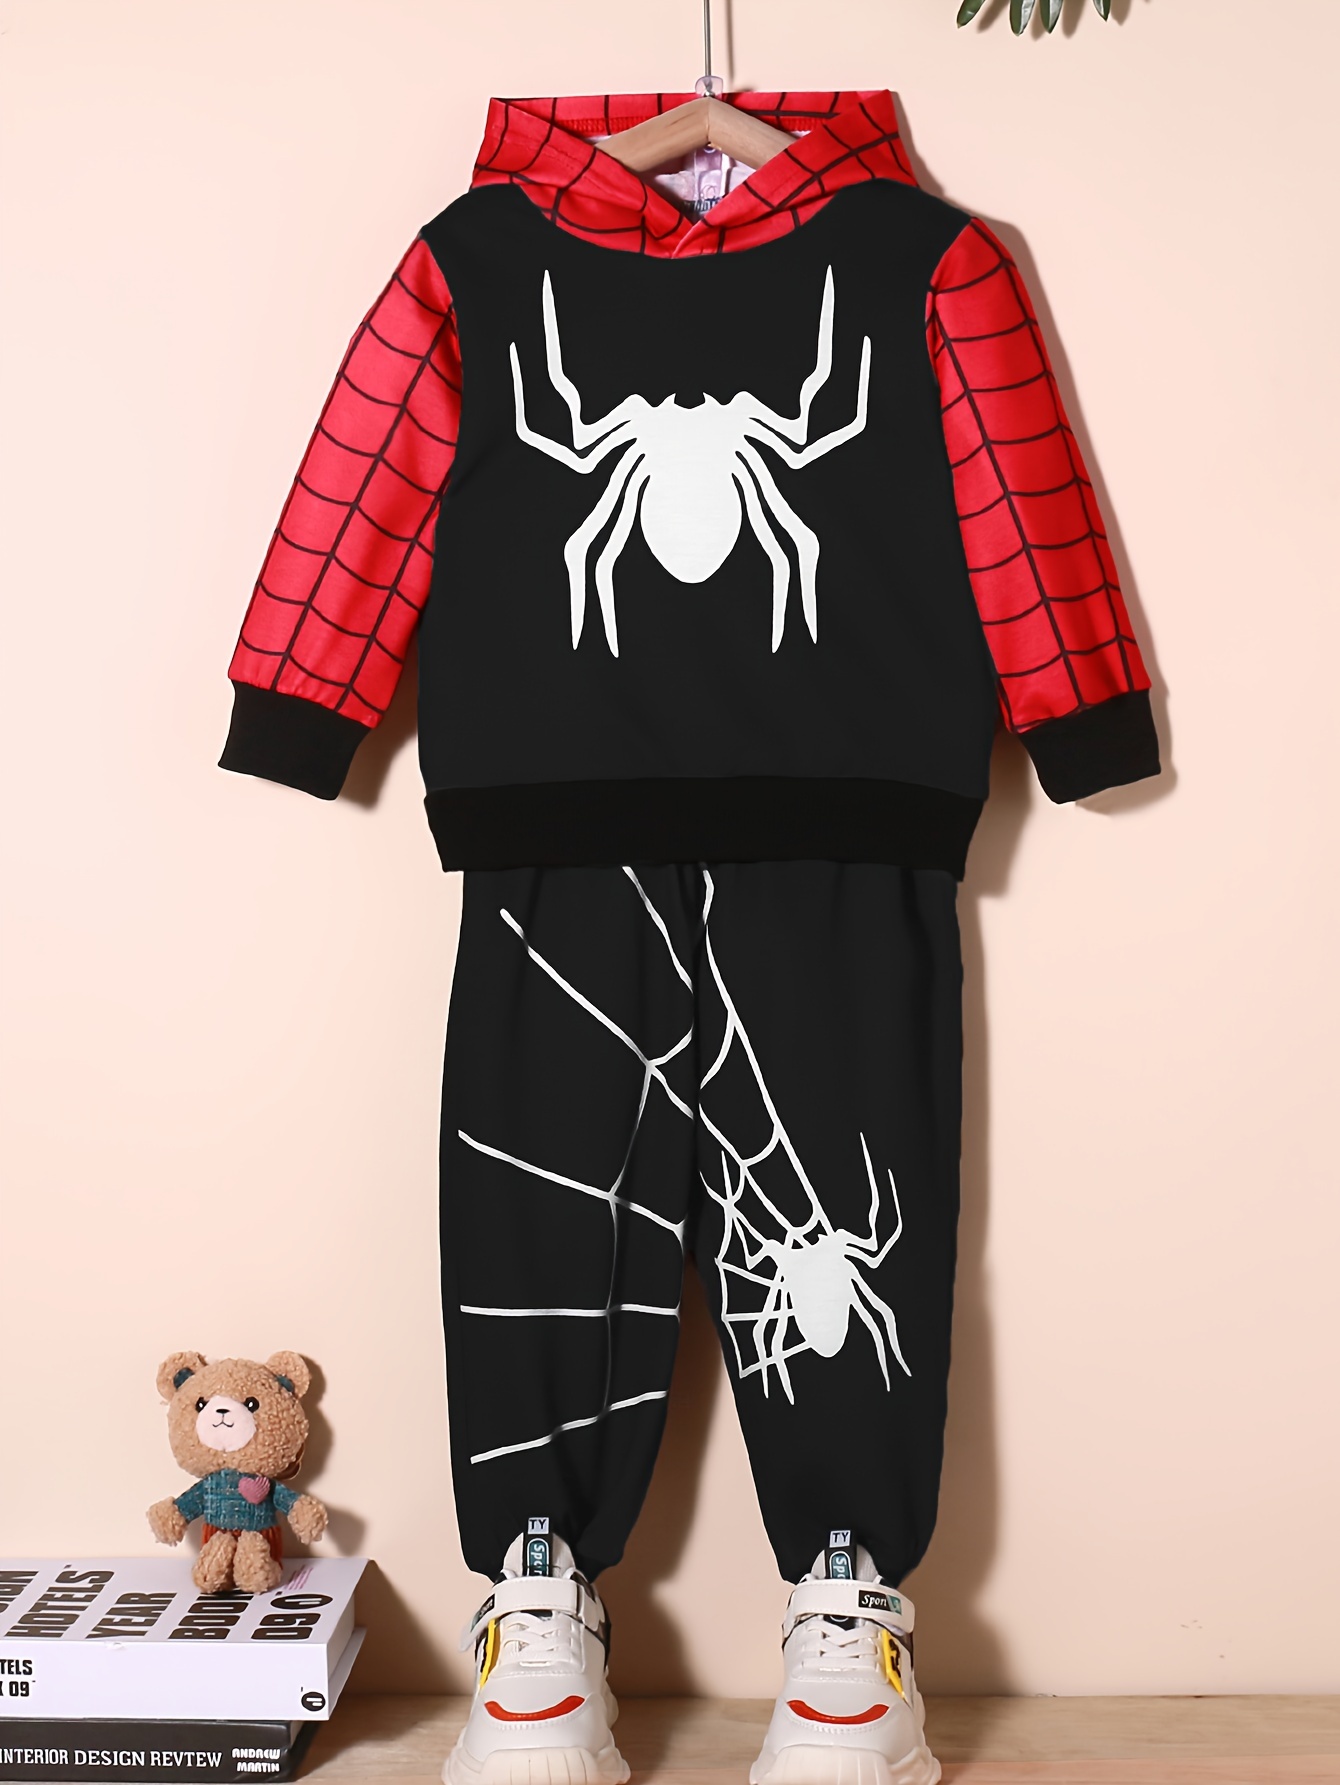 Buy Fancyku Spiderman Dress Bodysuit With Mask For Kids/Adult